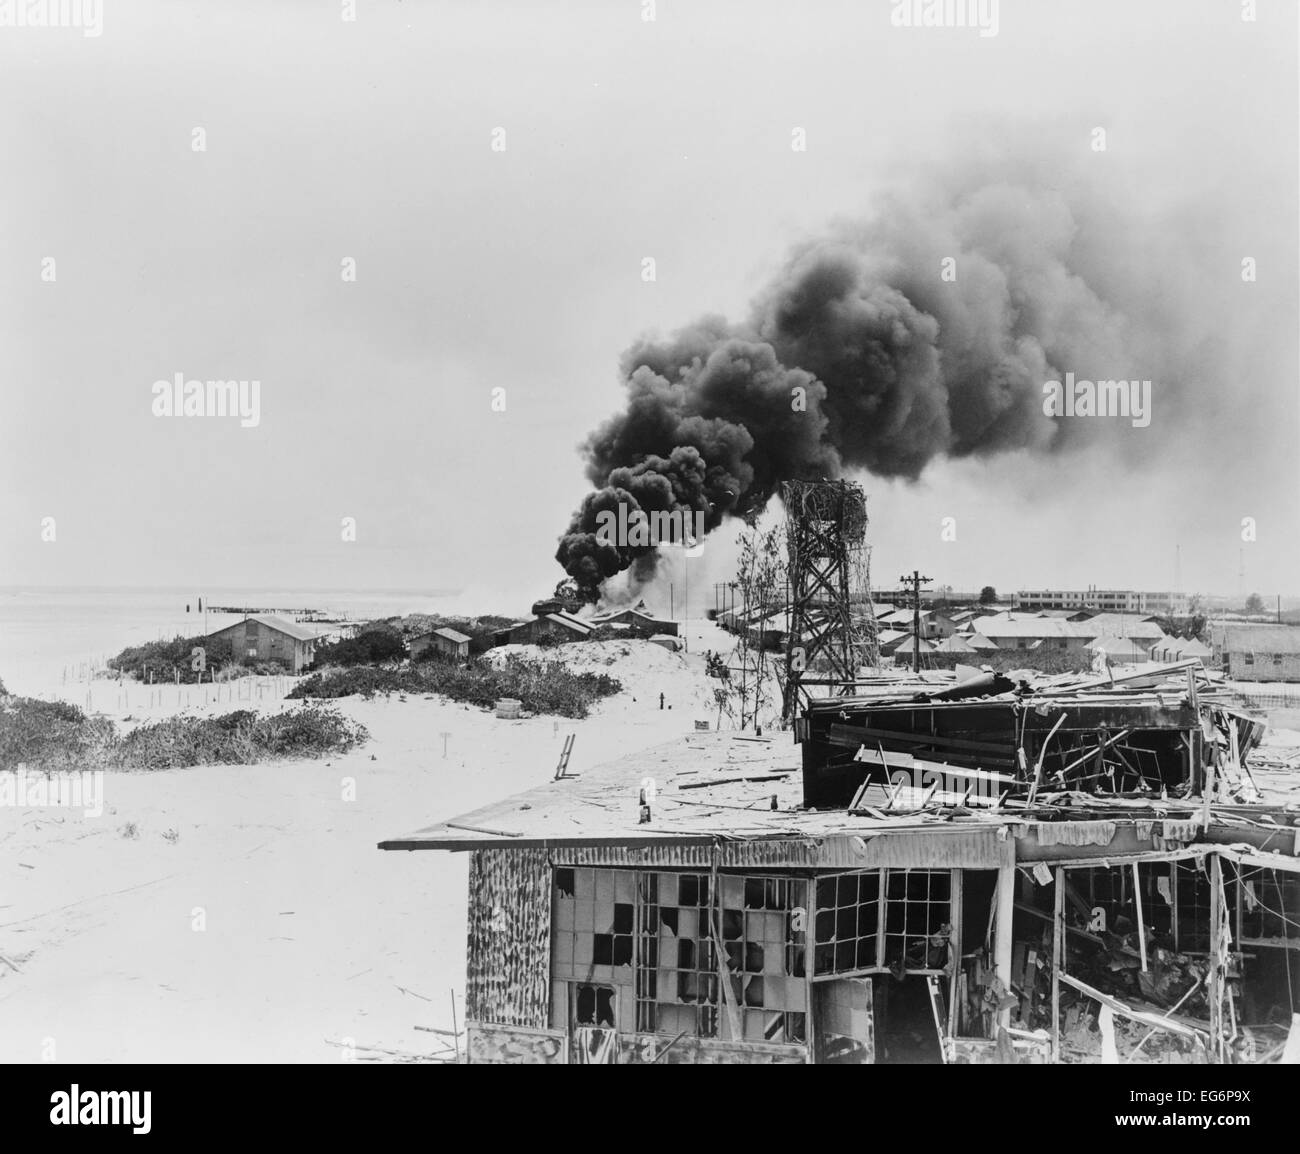 La fumée s'élevant à partir de réservoirs d'huile en feu sur l'île de Sable, à mi-chemin, après l'attaque aérienne japonaise, le 4 juin 1942. Cela a marqué le début Banque D'Images